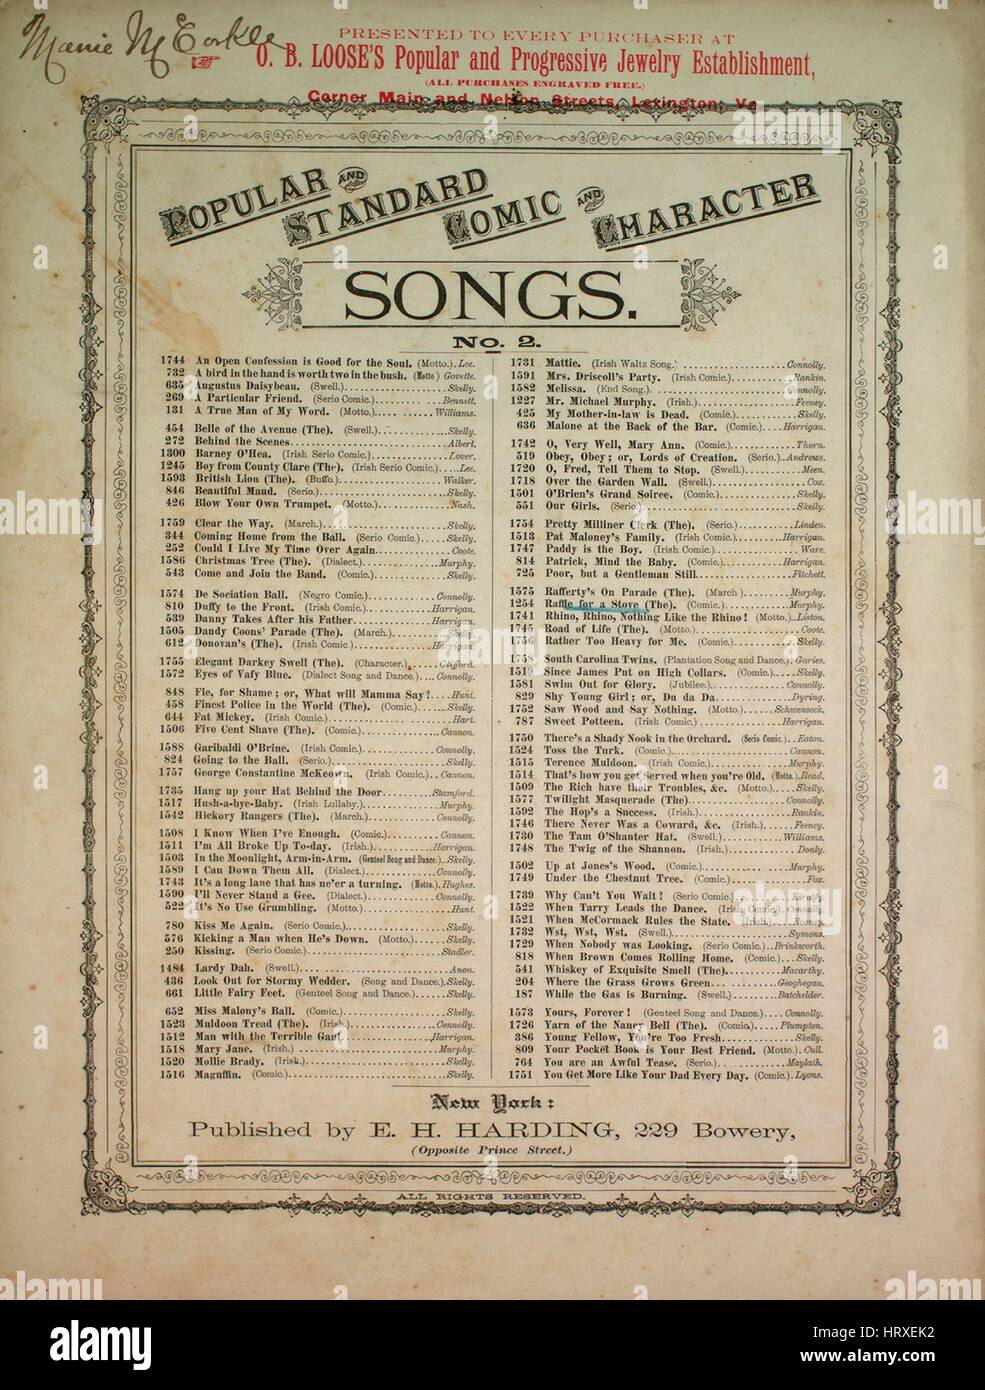 Noten-Cover-Bild des Liedes "Popular und Standard Comic und Charakter Songs No 2 Nr. 1254 der Verlosung für einen Herd", mit ursprünglichen Autorschaft Noten lesen "Geschrieben, komponiert von JE Murphy (von Murphy und Mack)", Vereinigte Staaten, 1879. Der Verlag als "E.H. Harding, 229 Bowery (gegenüberliegende Prince Street)" aufgeführt ist, die Form der Komposition ist "strophische mit Chor (mit Tanzeinlage)", die Instrumentierung ist "Klavier und Stimme", die erste Linie liest "Am vergangenen Mittwoch besuchte ich eine Verlosung für einen Herd, zugunsten der Frau und sollt der Timothy J. Cosgrove" und der Abbildung Künstler aufgeführt als Stockfoto